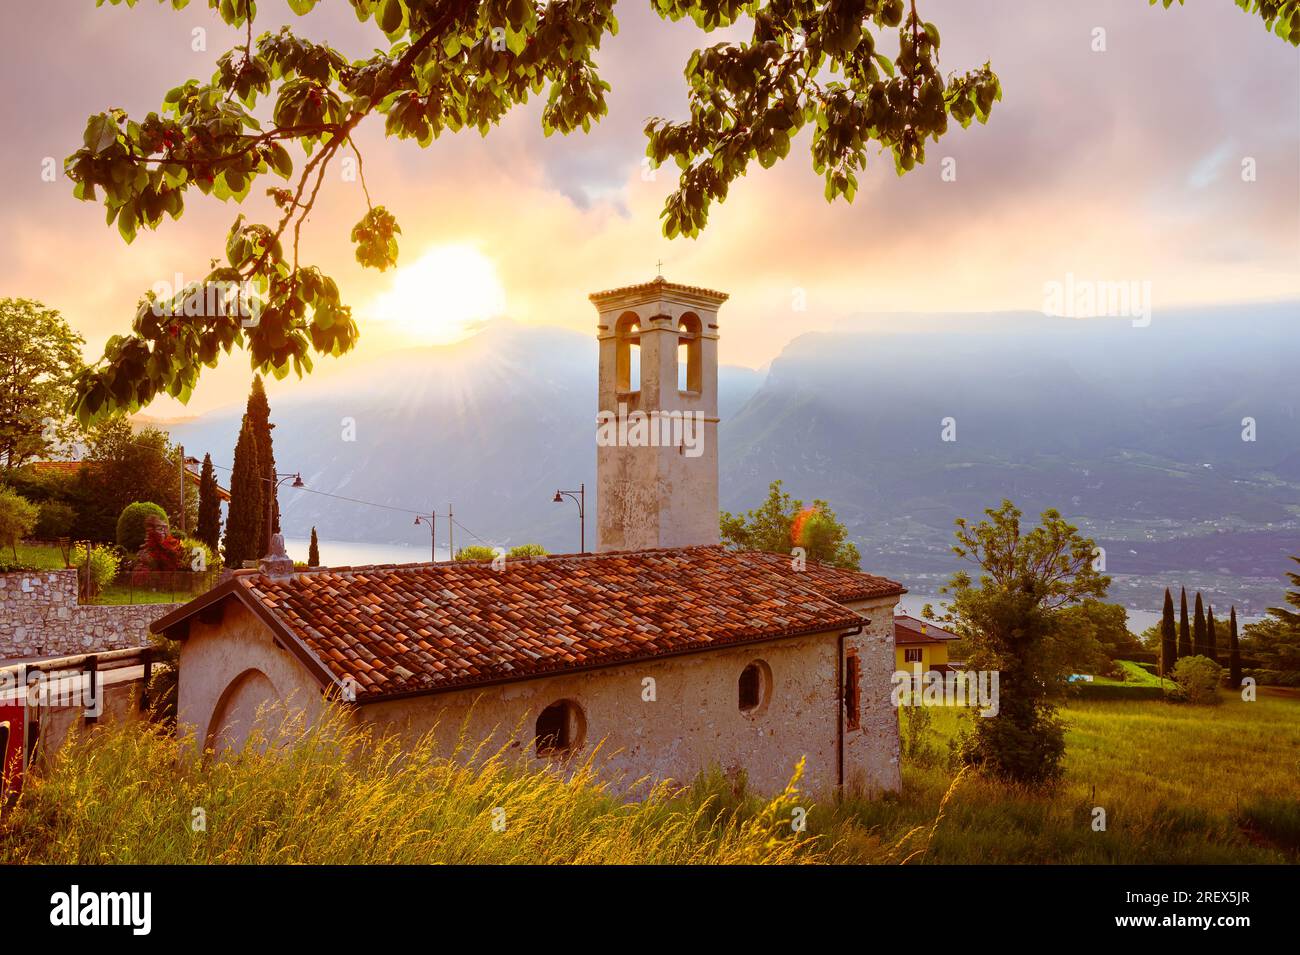 Paysage avec petite église au lever du soleil dans la ville de Limone sul garda, Lac de Garde, Italie Banque D'Images